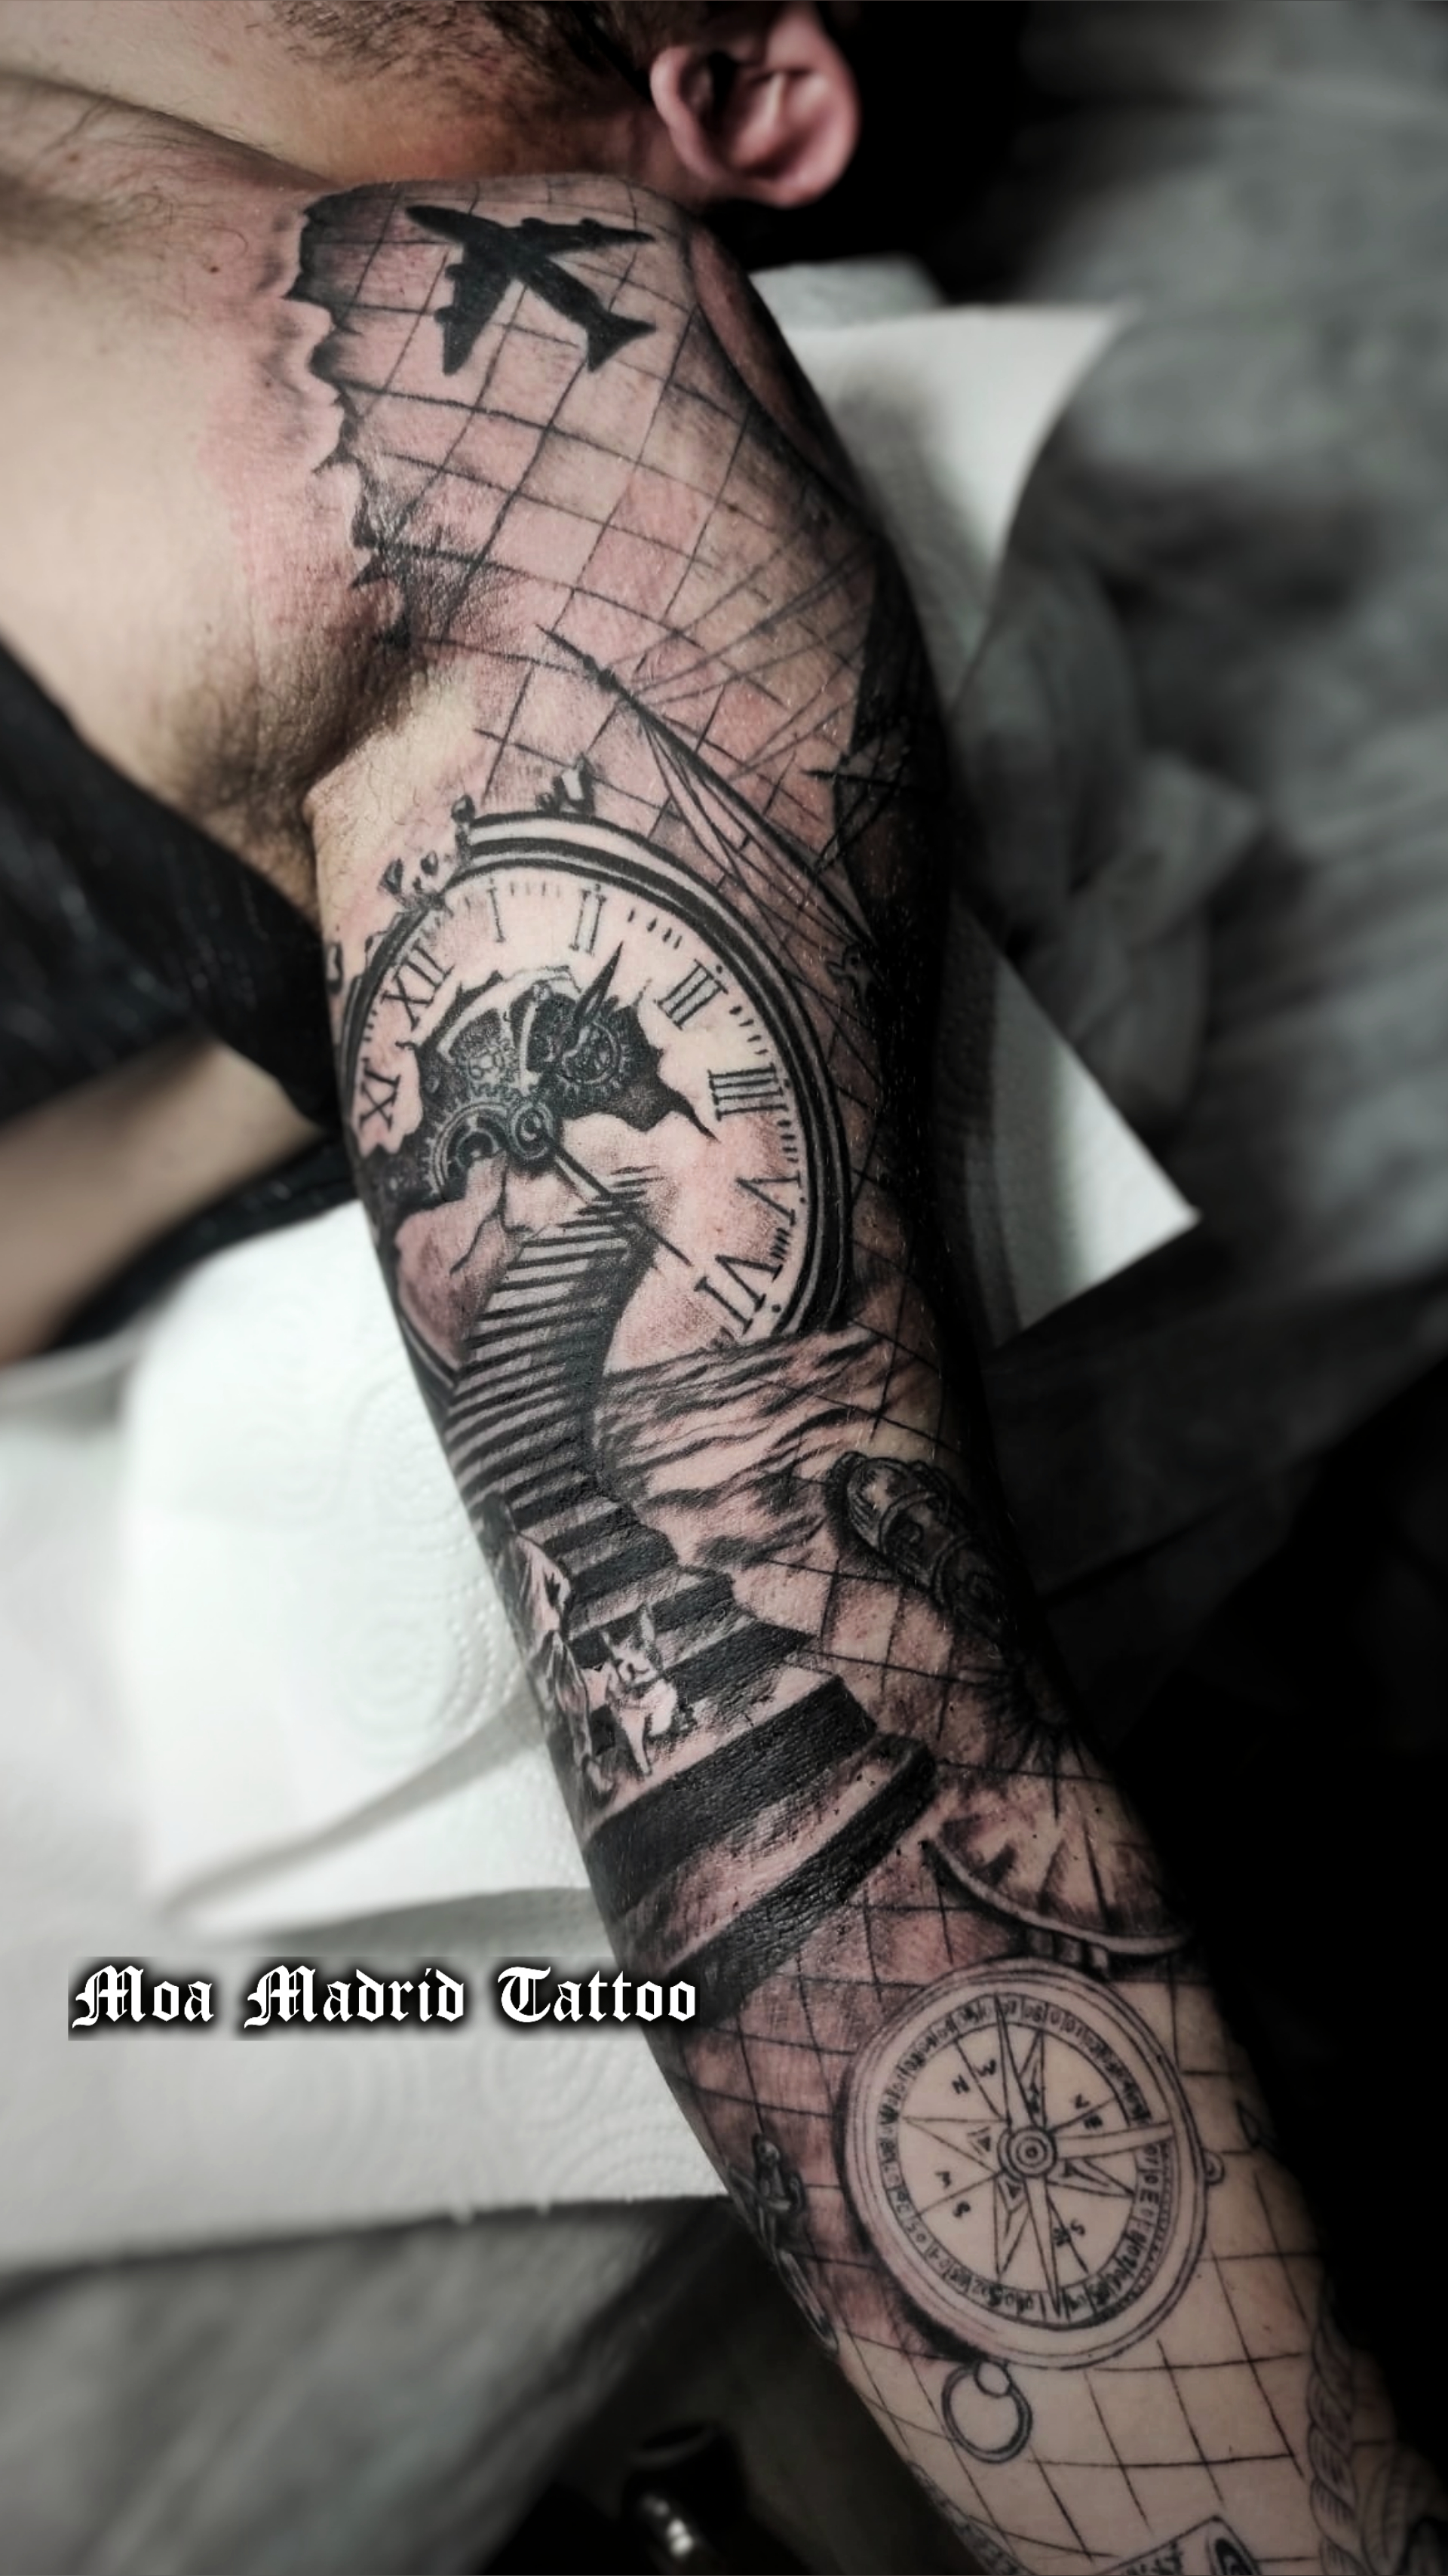 Brazo entero tatuado: tatuajes de escaleras y reloj